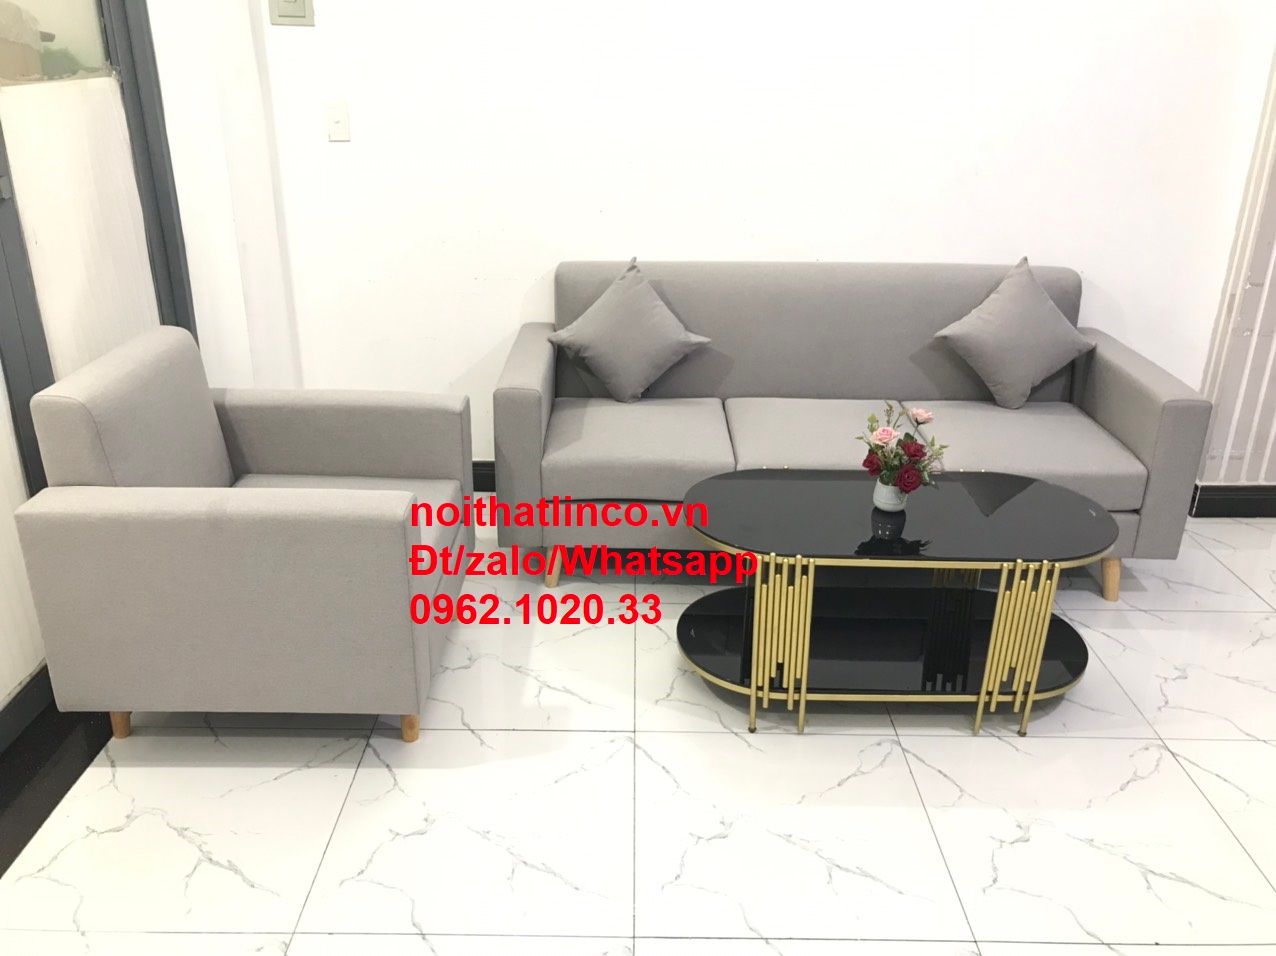 Bộ ghế salon căn hộ SG | Nội thất sofa phòng khách hiện đại HCM – Nội thất  Linco Sài Gòn